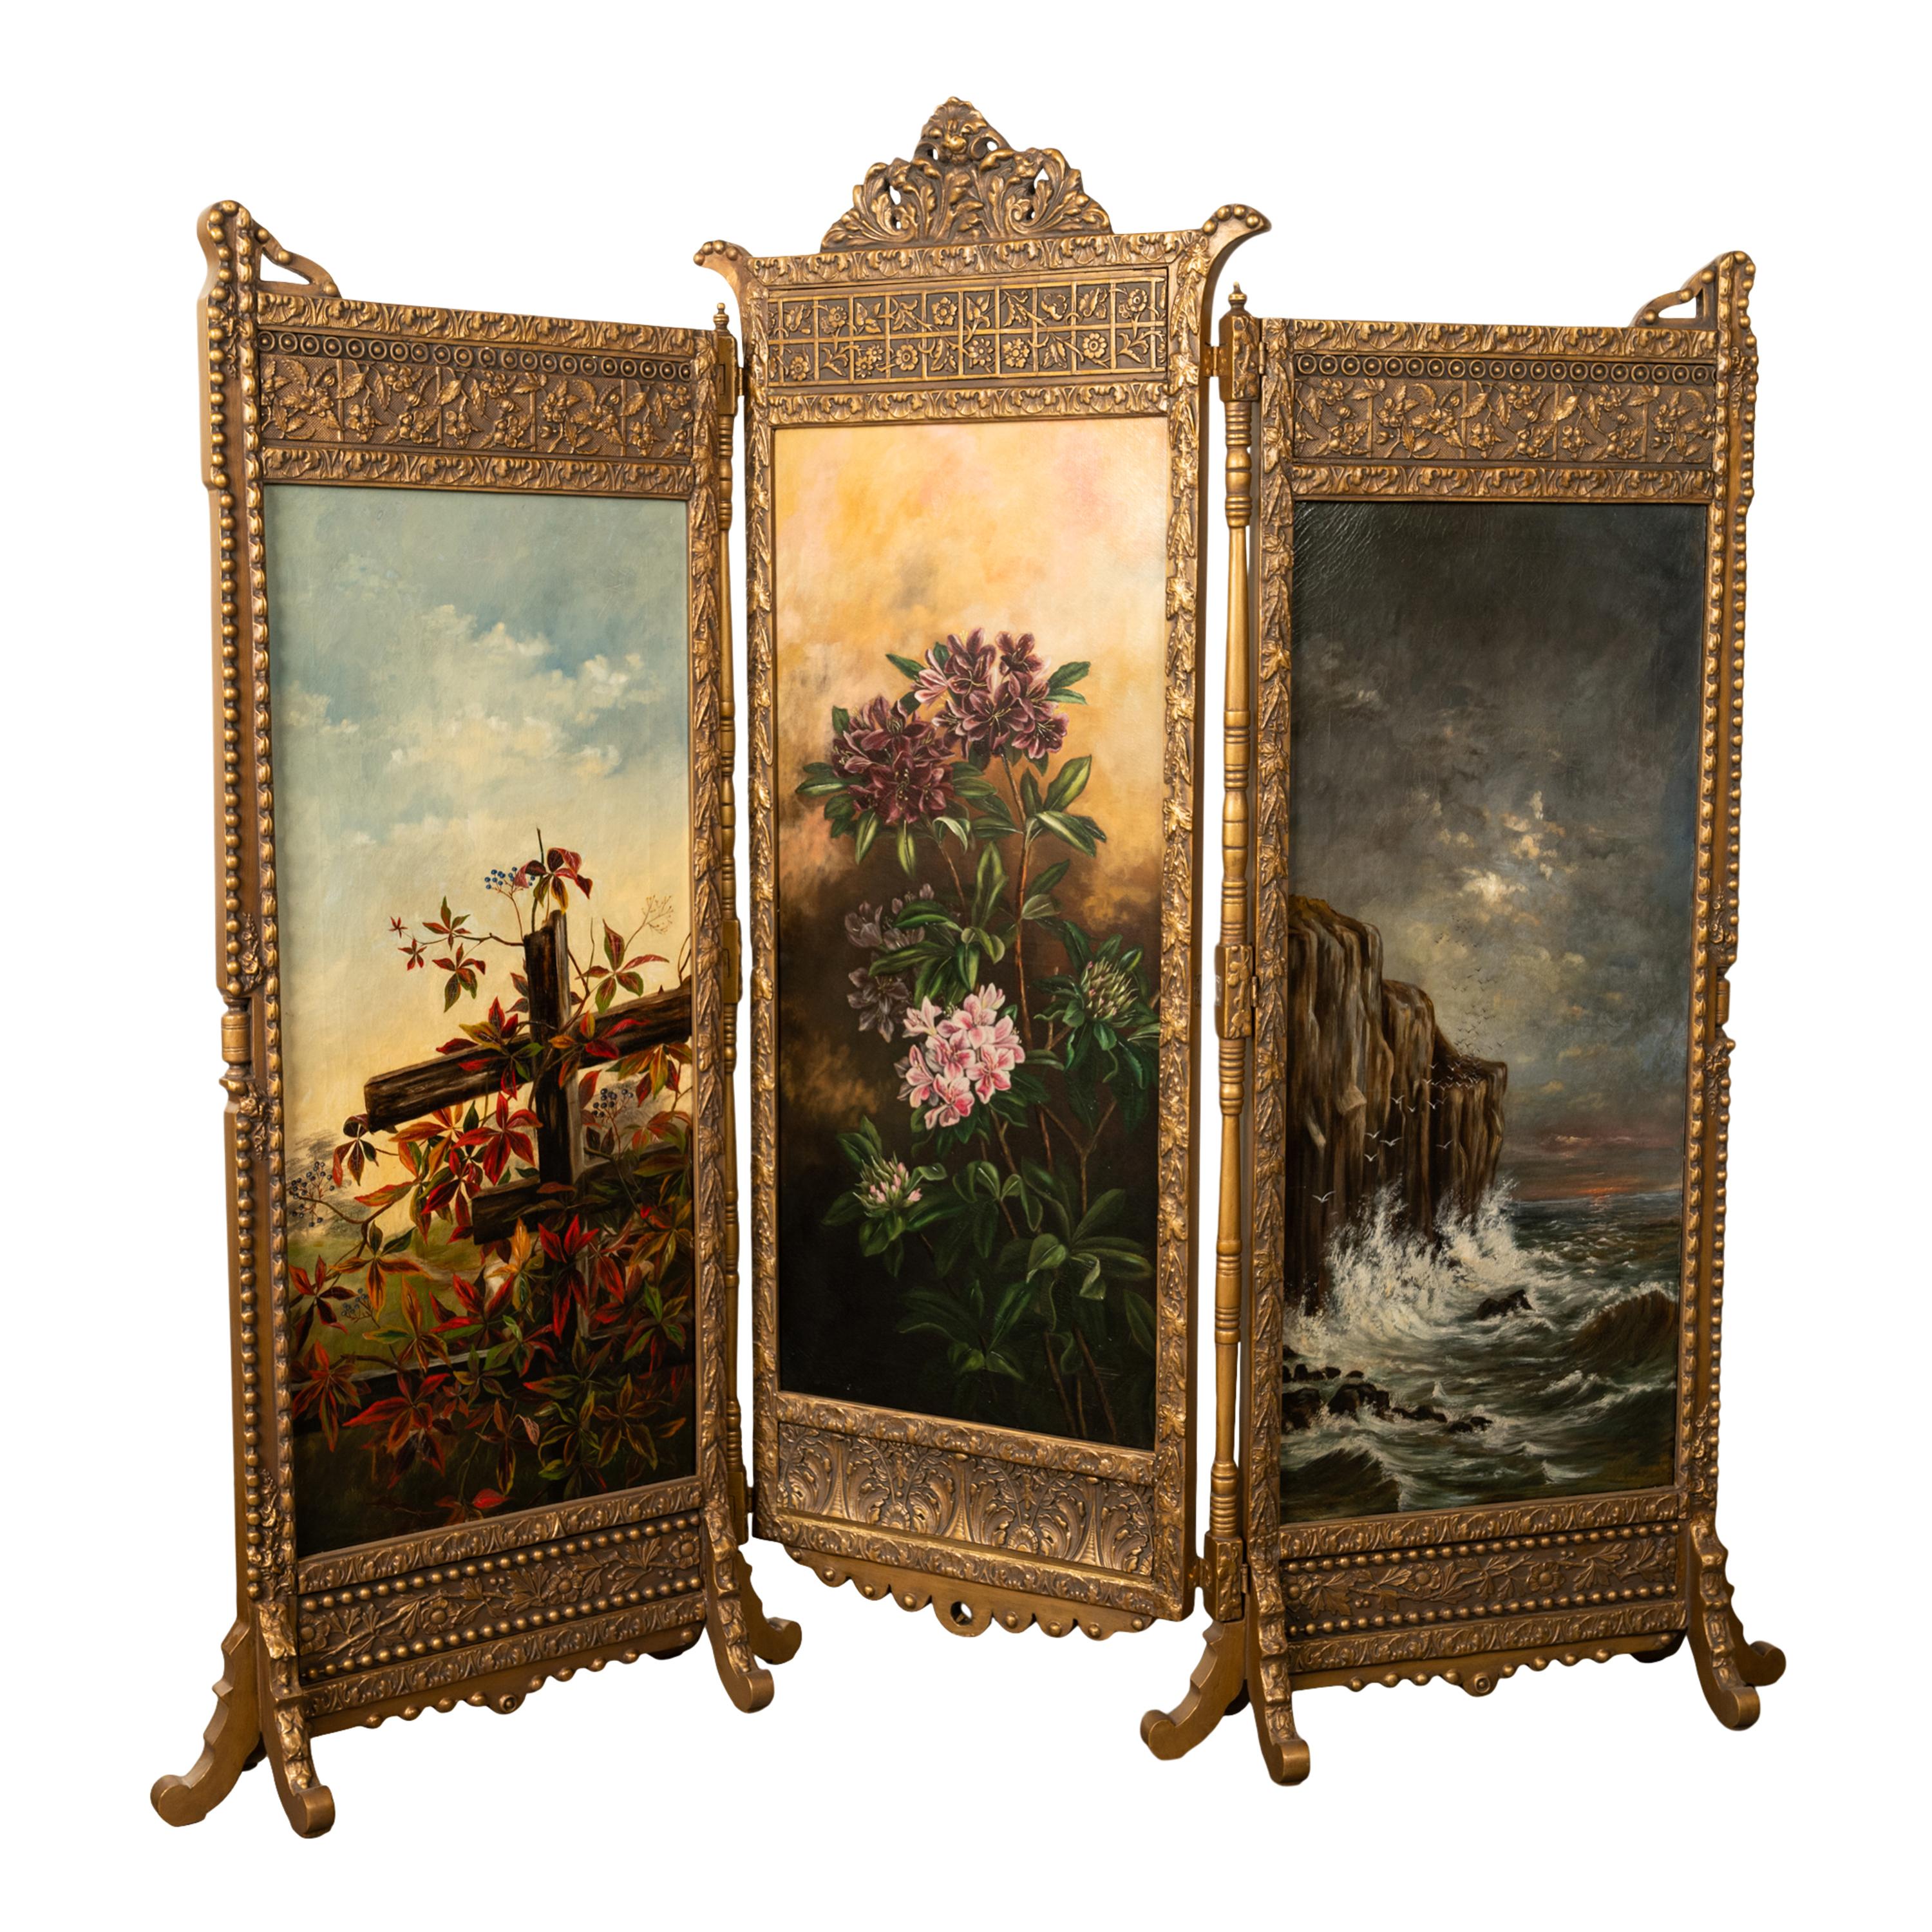 Eine schöne und seltene antike amerikanische Ästhetische Bewegung vergoldete drei Panel Raumteiler Bildschirm, mit drei Original-Ölgemälde, 1885, aus dem Nachlass von J.D. Rockefeller, New York.
Der dreifach gefaltete Paravent hat eine vergoldete